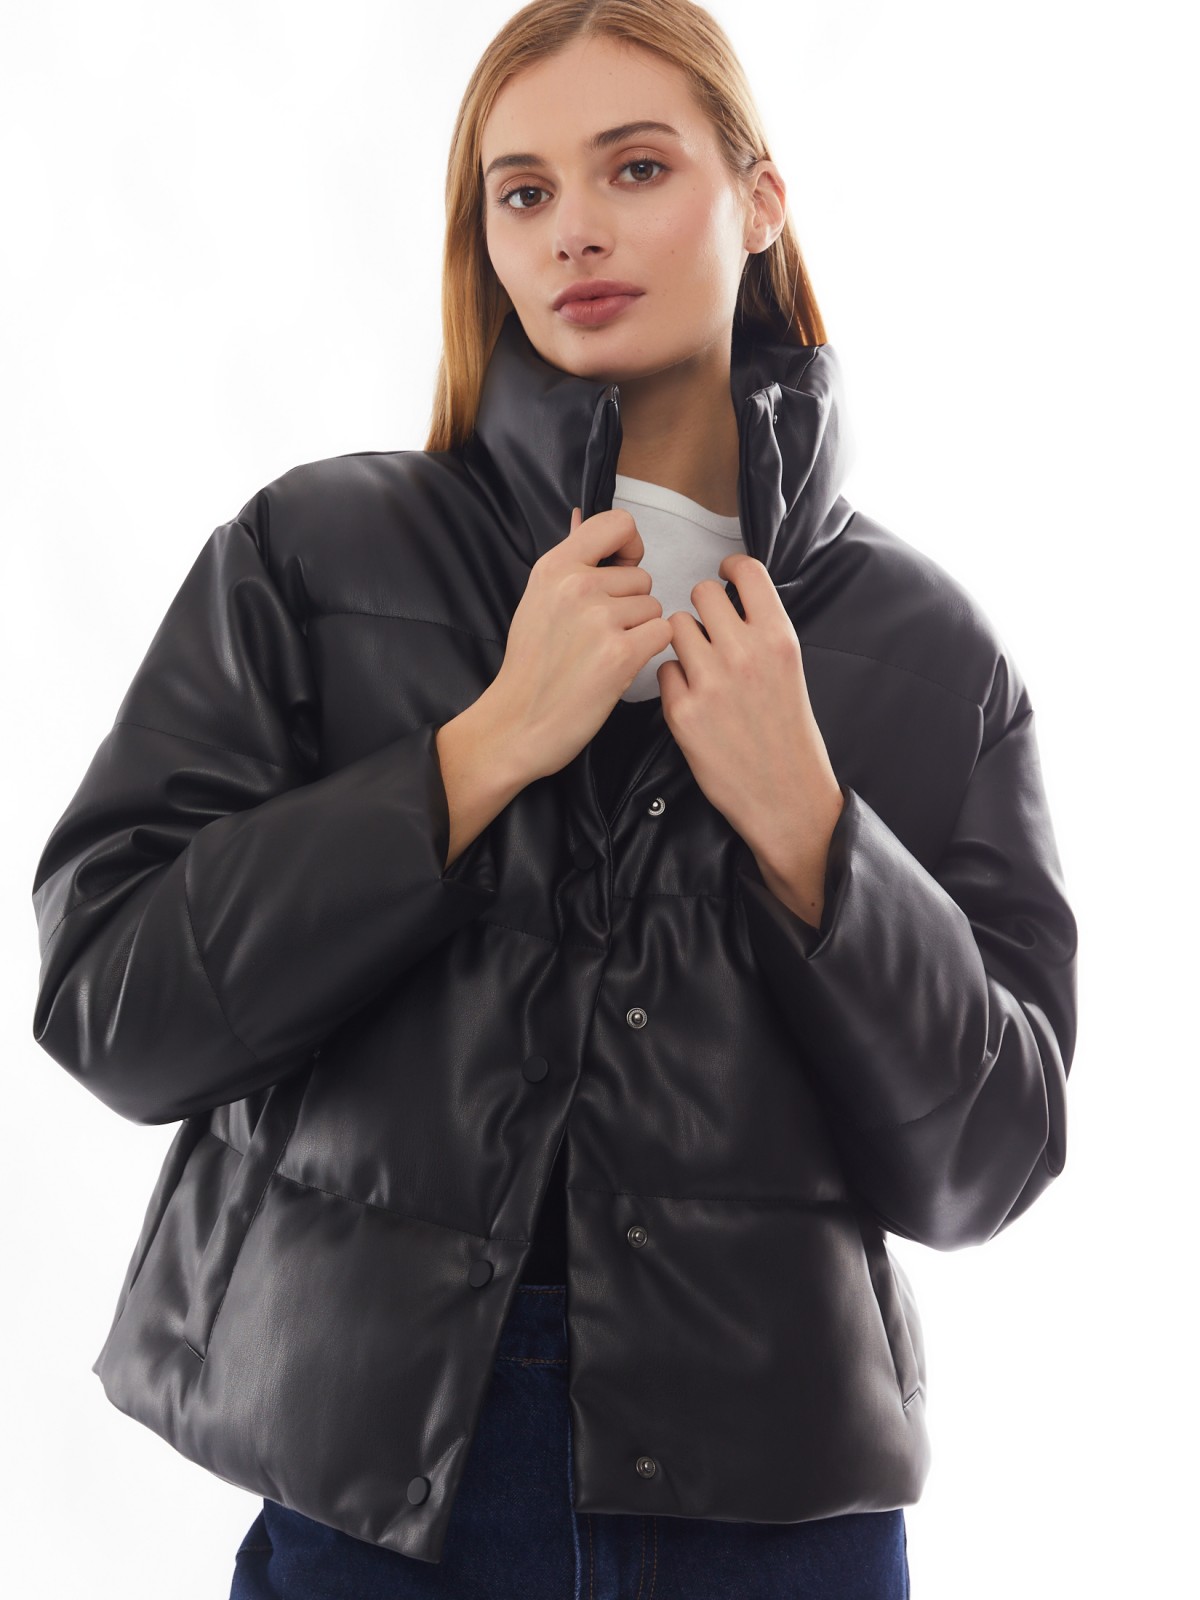 Тёплая стёганая дутая куртка из экокожи с высоким воротником zolla 02412516F034, цвет черный, размер XS